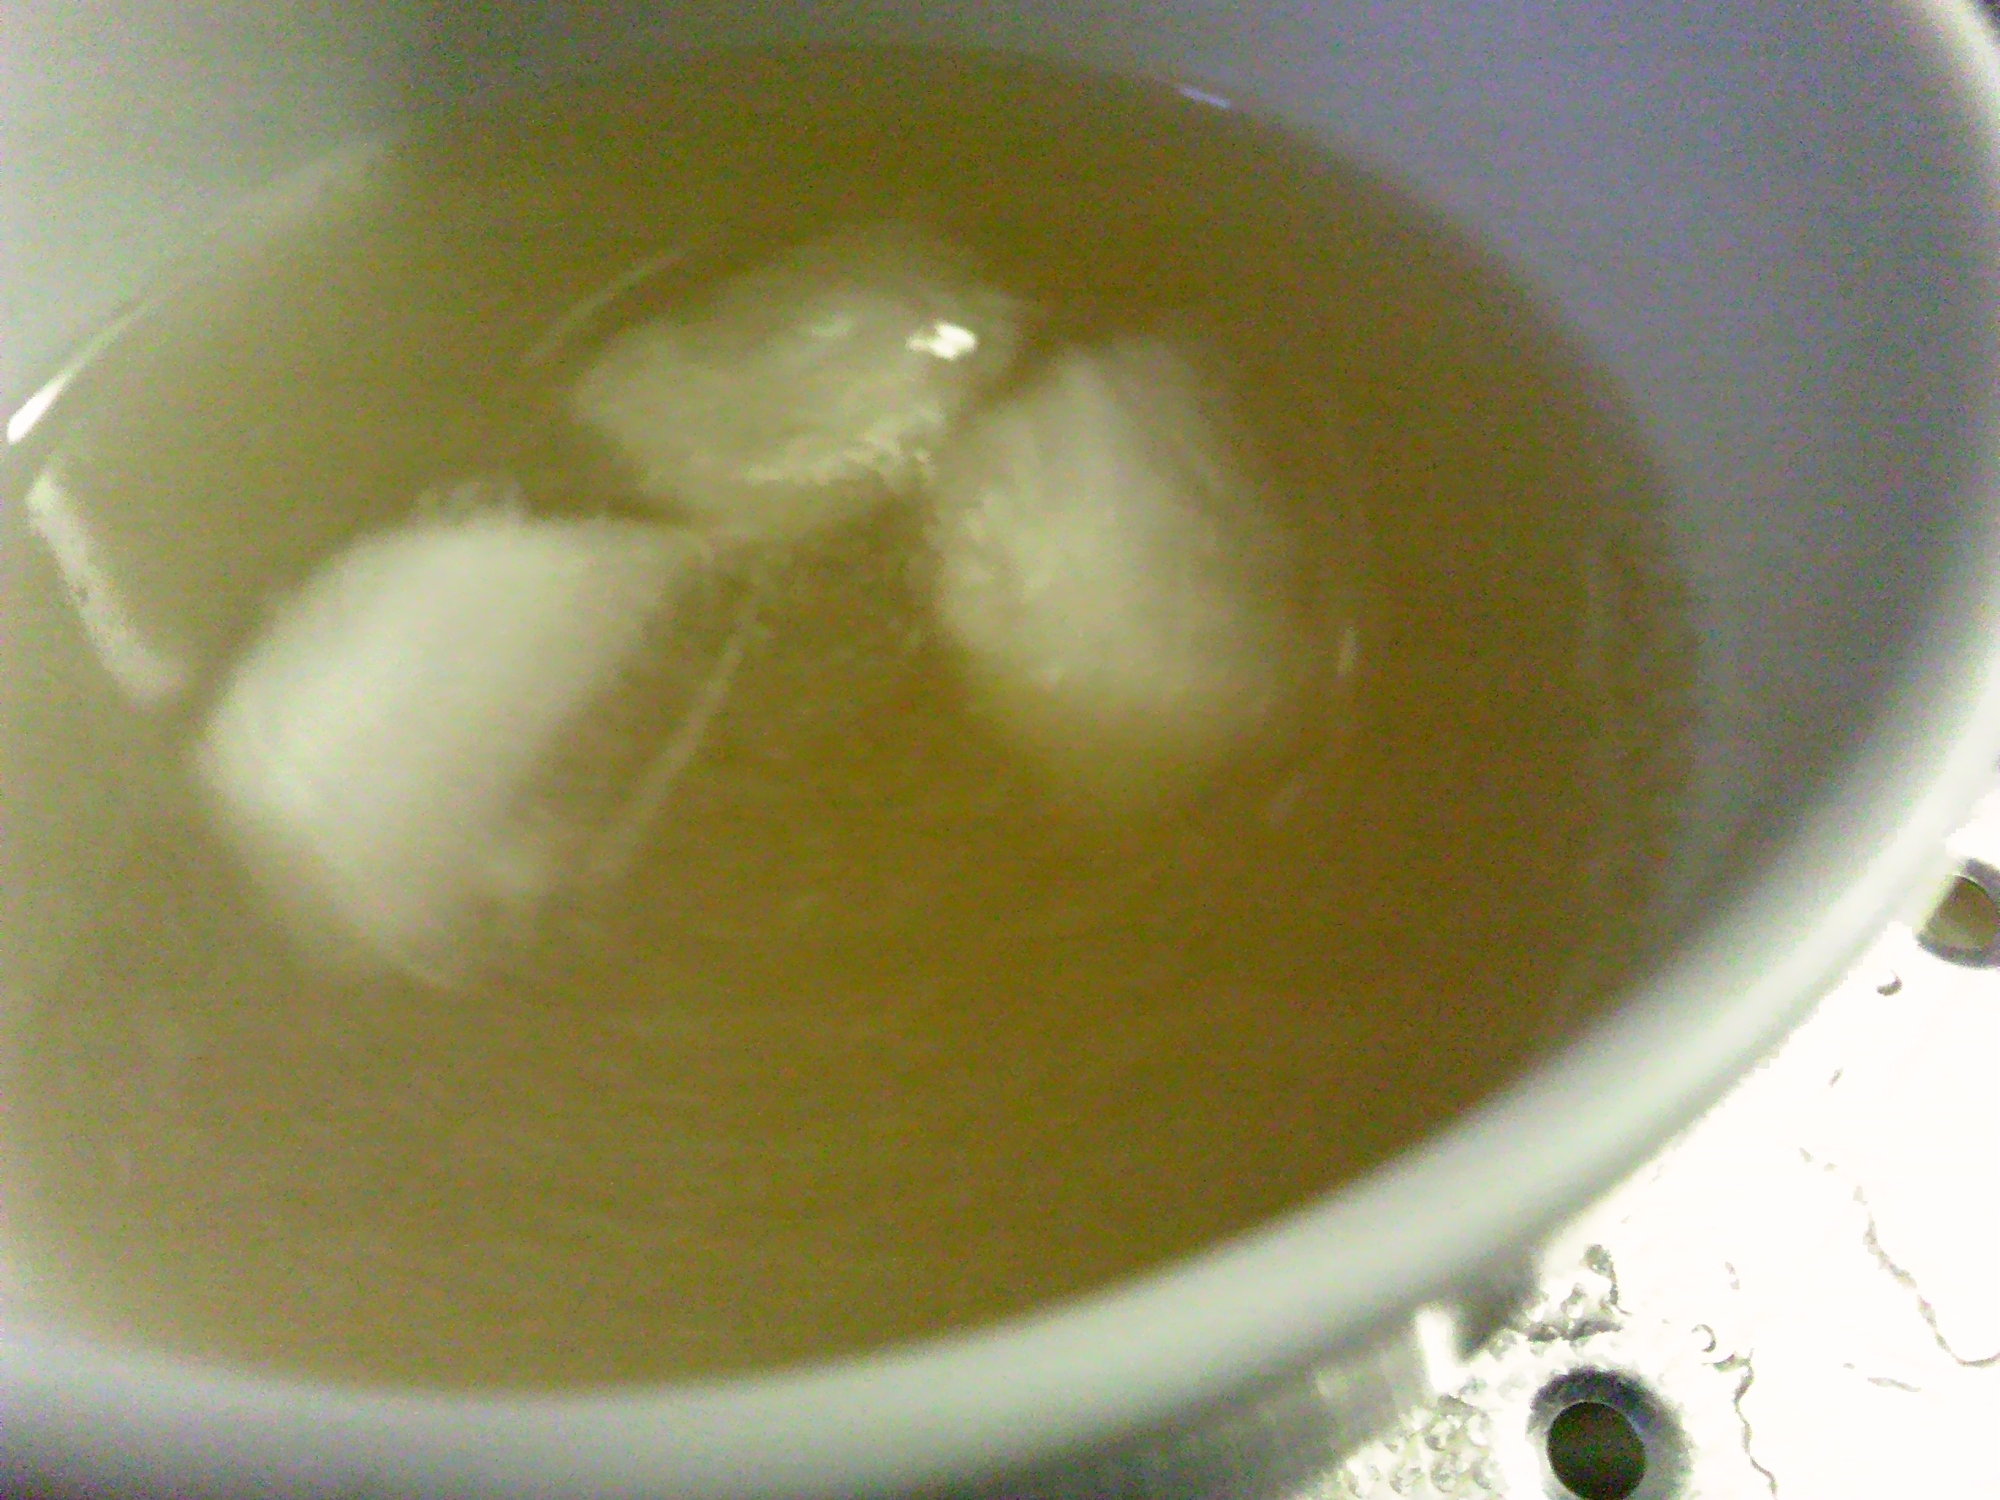 塩麹はちみつ緑茶